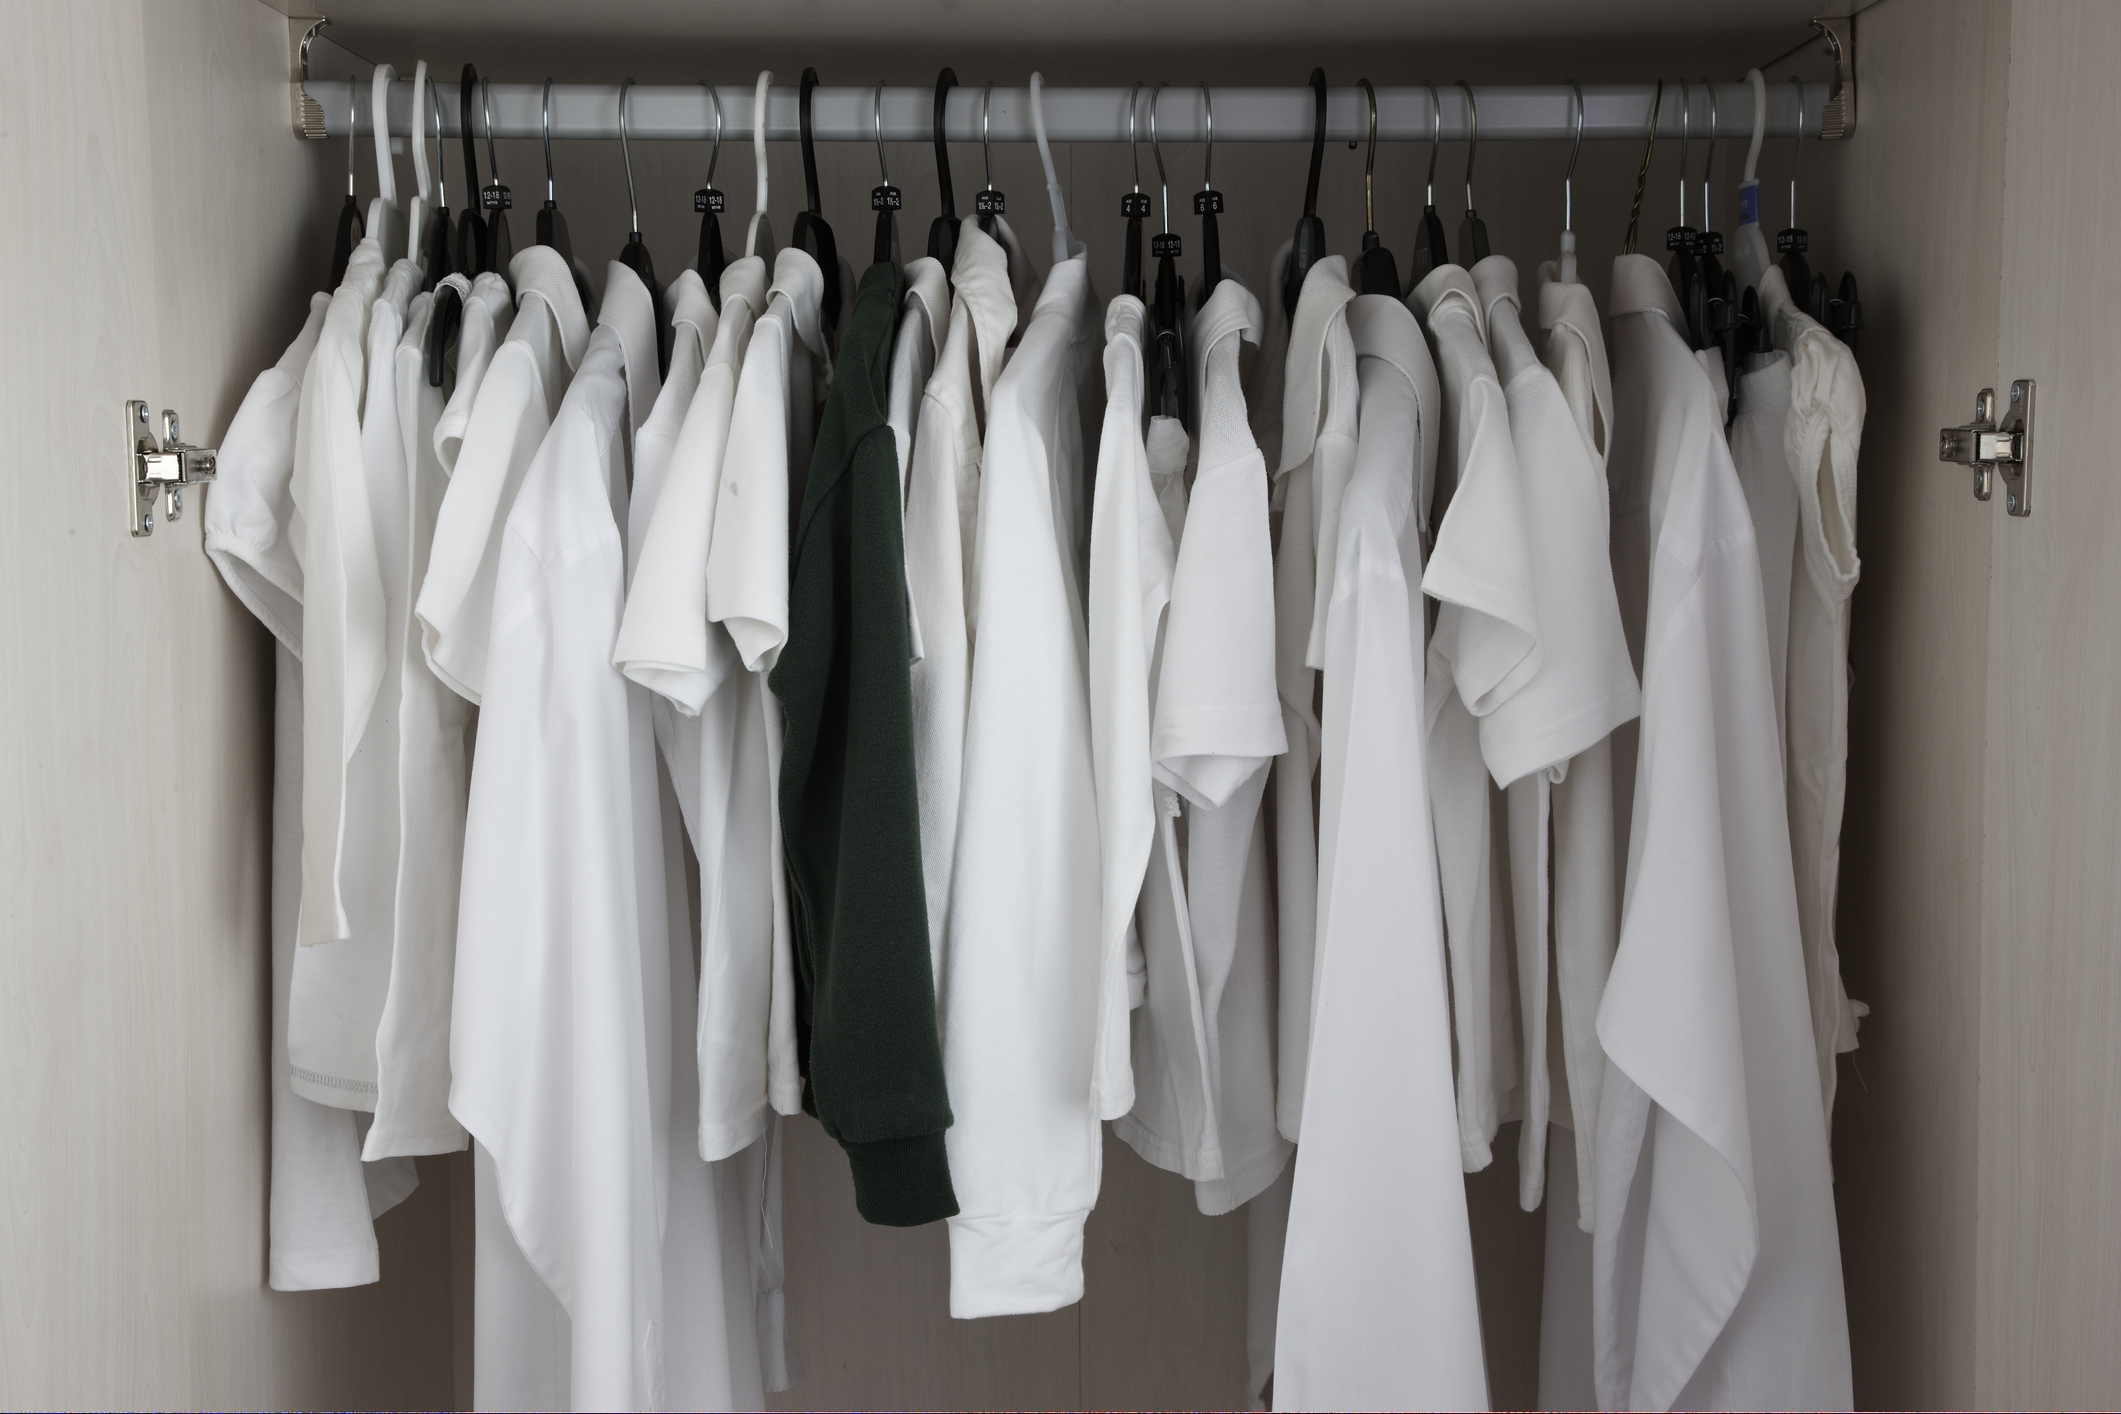 Футболки в гардеробе. Вешалка для одежды. Гардероб вещи на вешалках. Белая одежда в гардеробе. Одежда висит на вешалке.